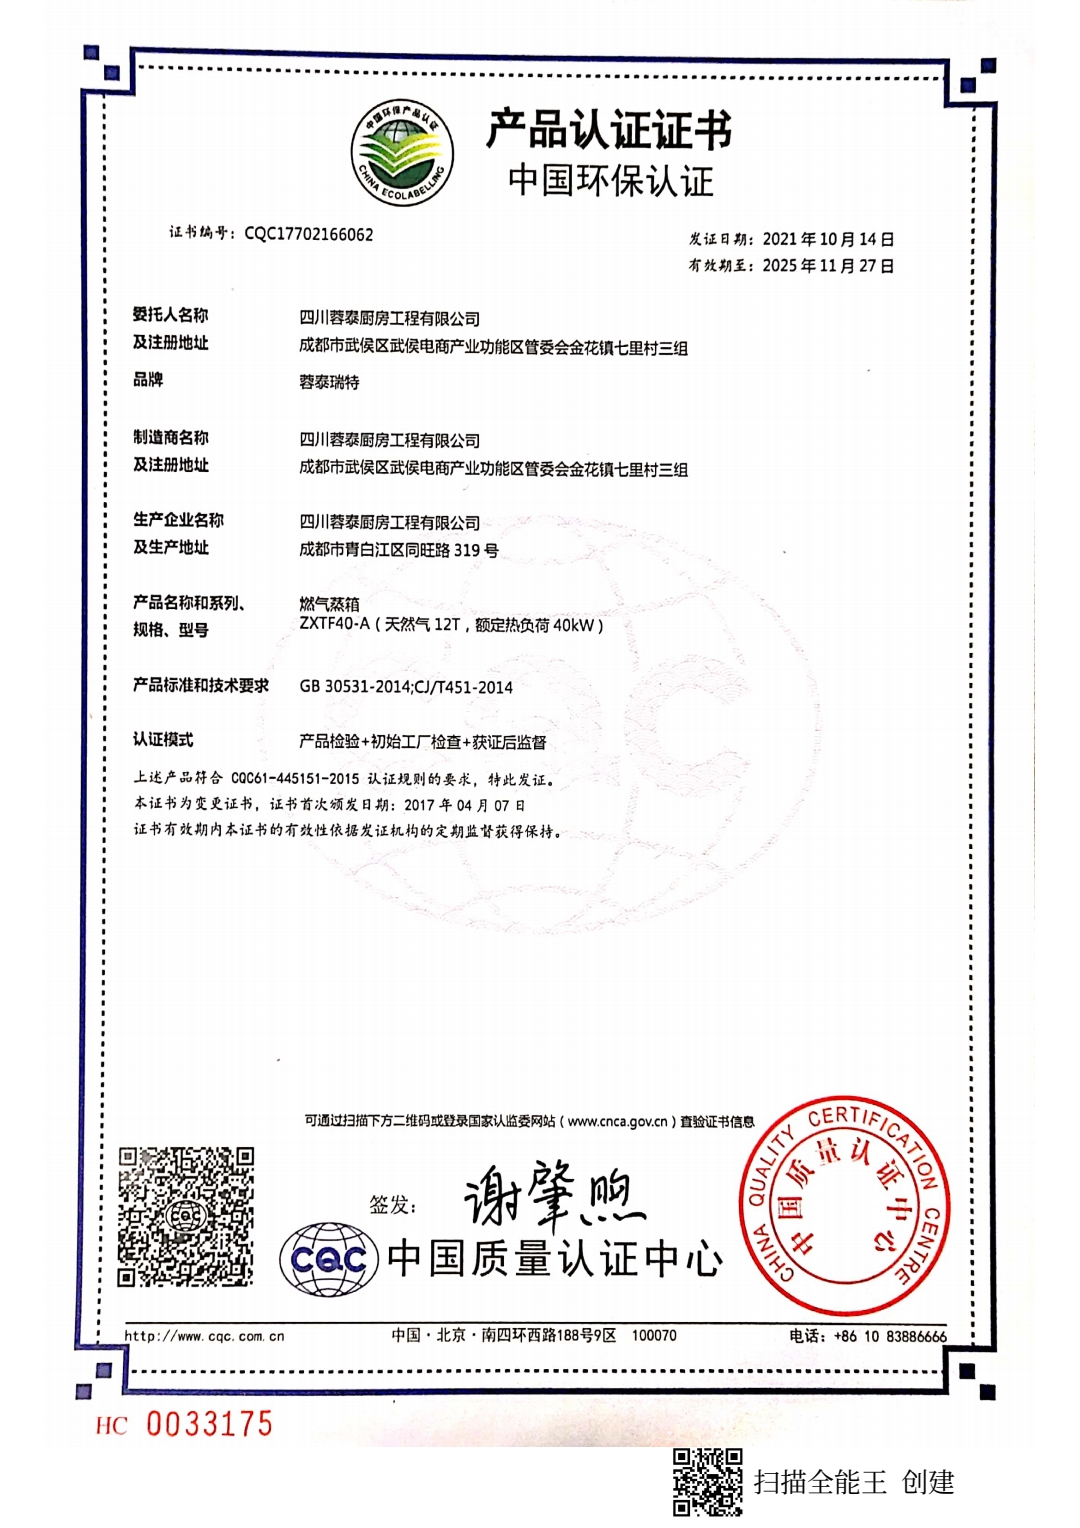 恭喜四川蓉泰厨房工程有限公司顺利通过审核取得中国环保产品认证证书